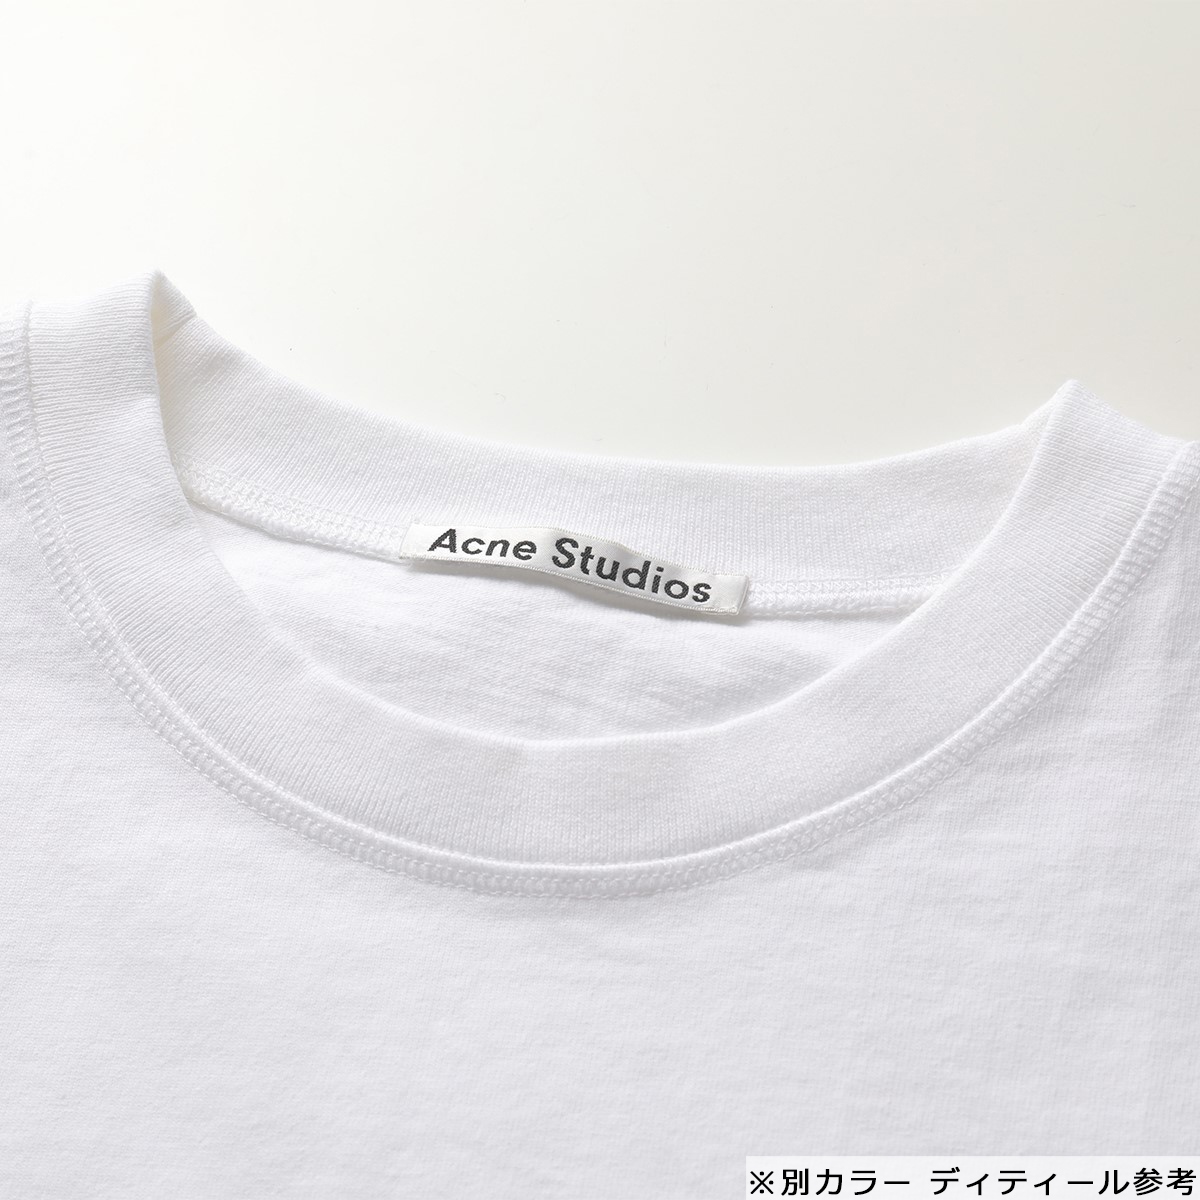 Acne Studios アクネストゥディオズ FN WN DRES000316 リバースロゴTシャツドレス 半袖 ワンピース Tシャツ Black  レディース | インポートセレクト musee